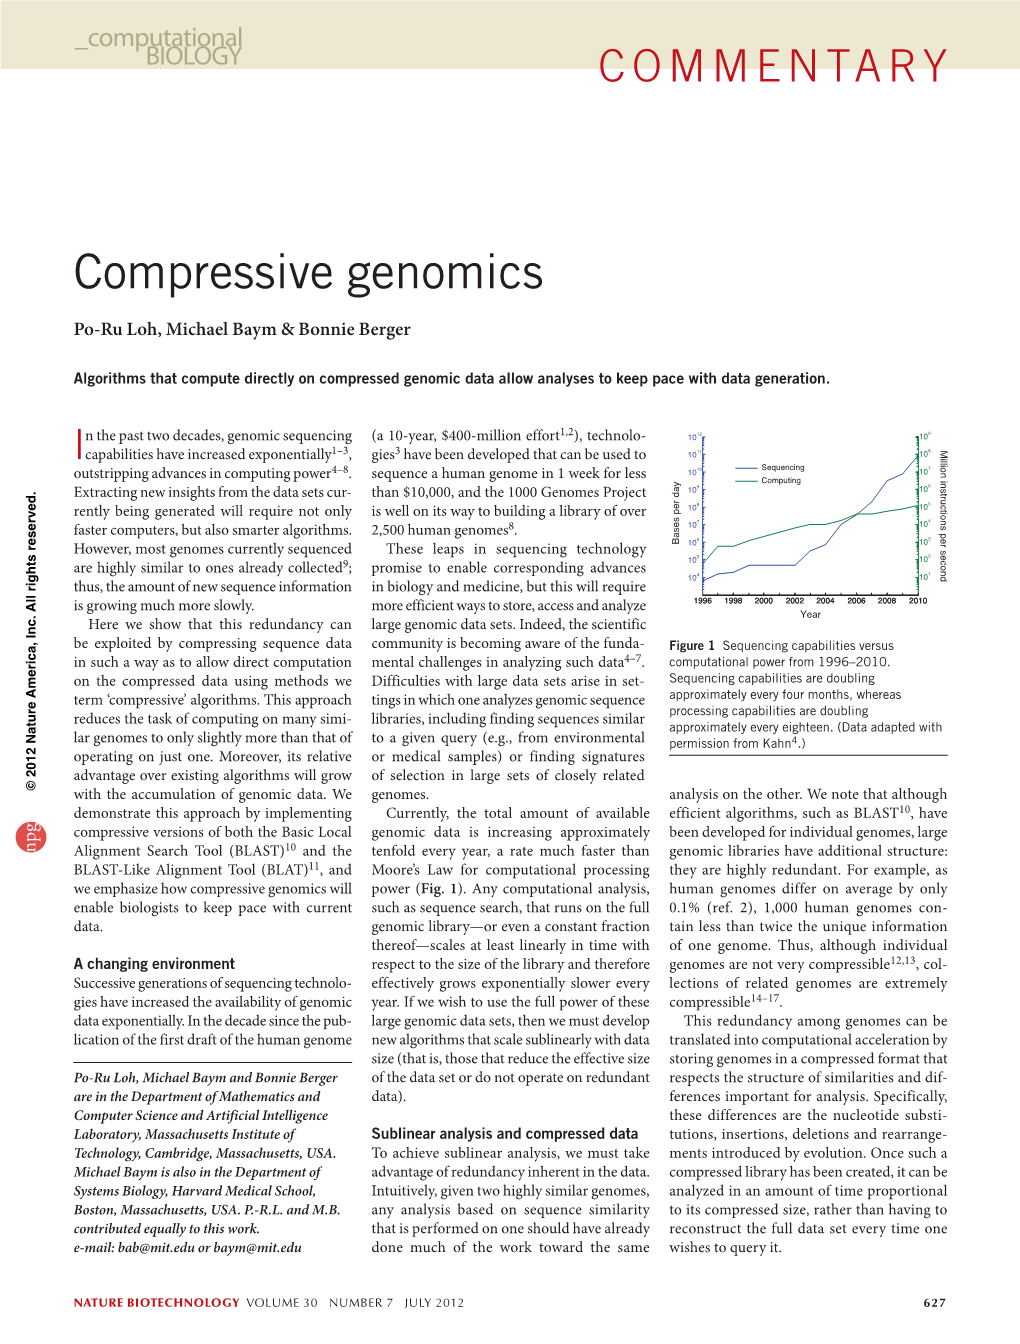 Compressive Genomics